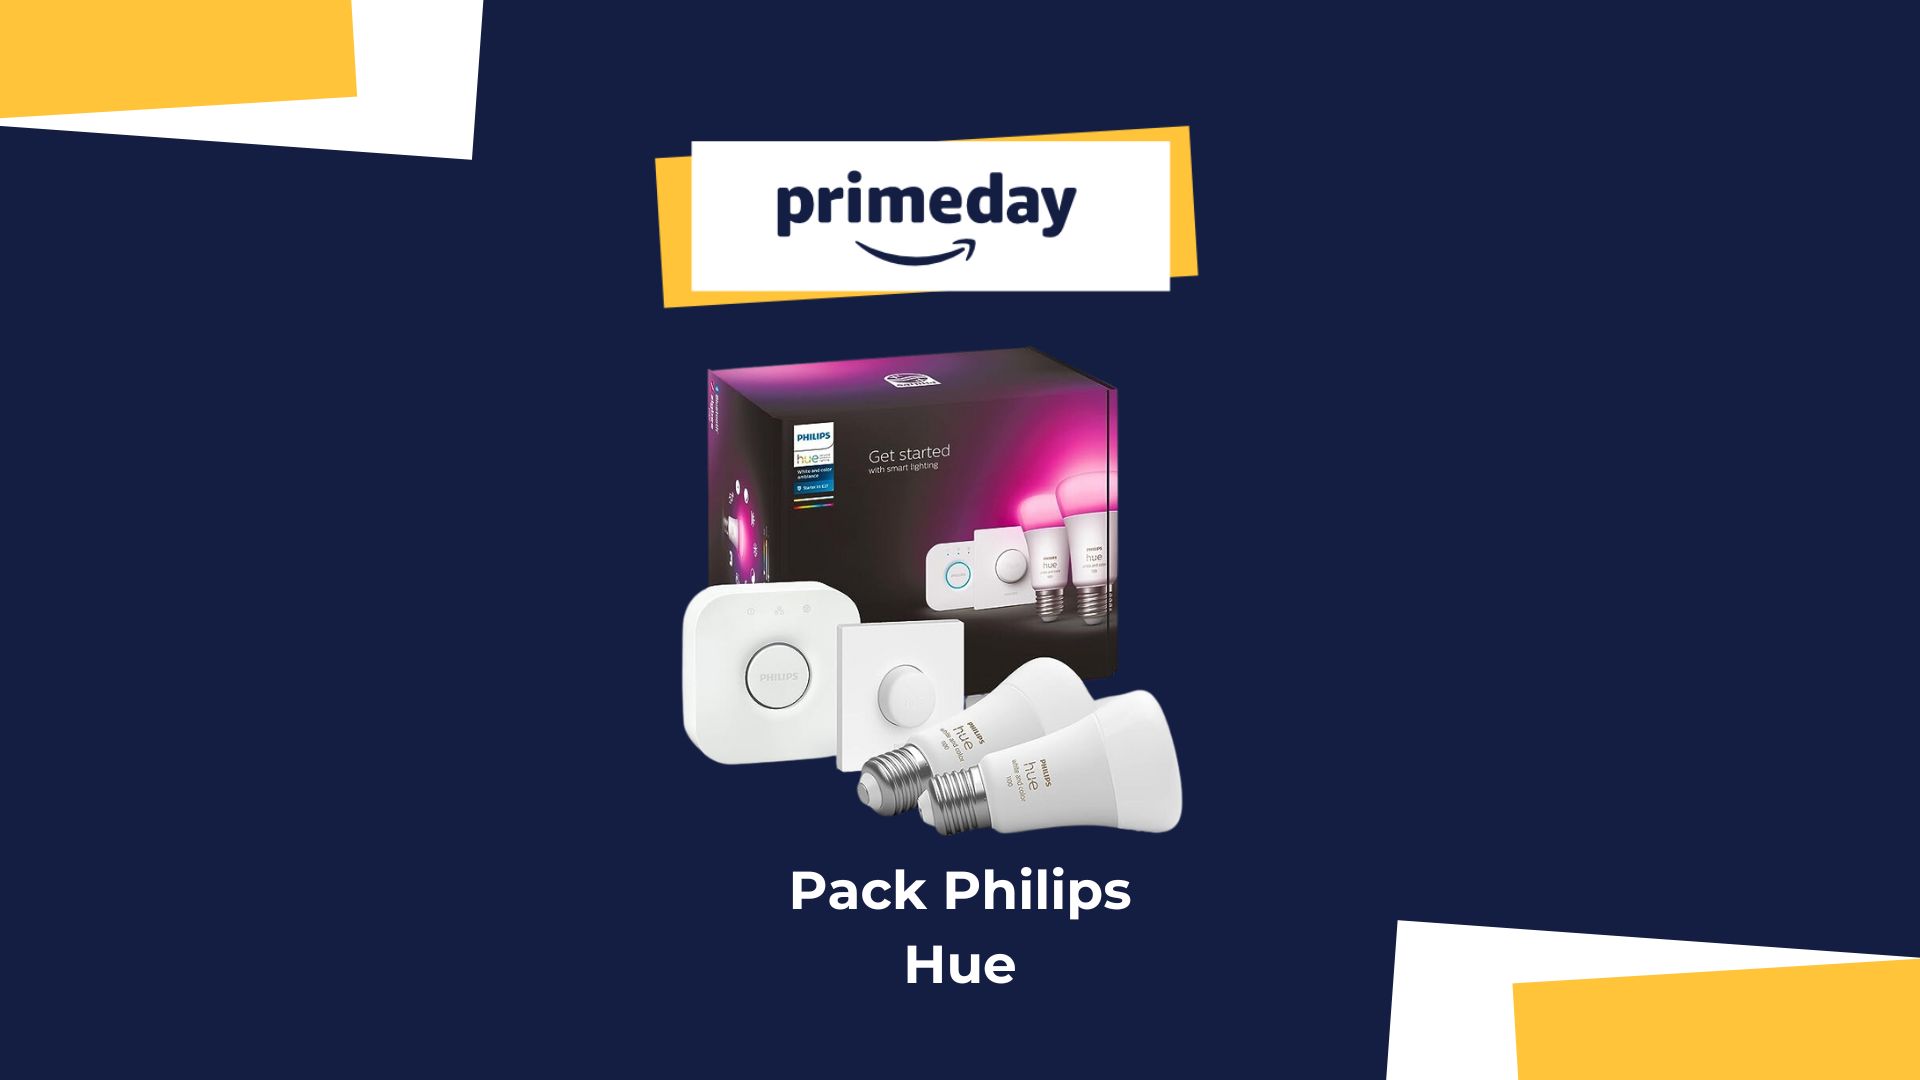 Promo : jusqu'à 100 € de remise sur les kits de démarrage Philips Hue